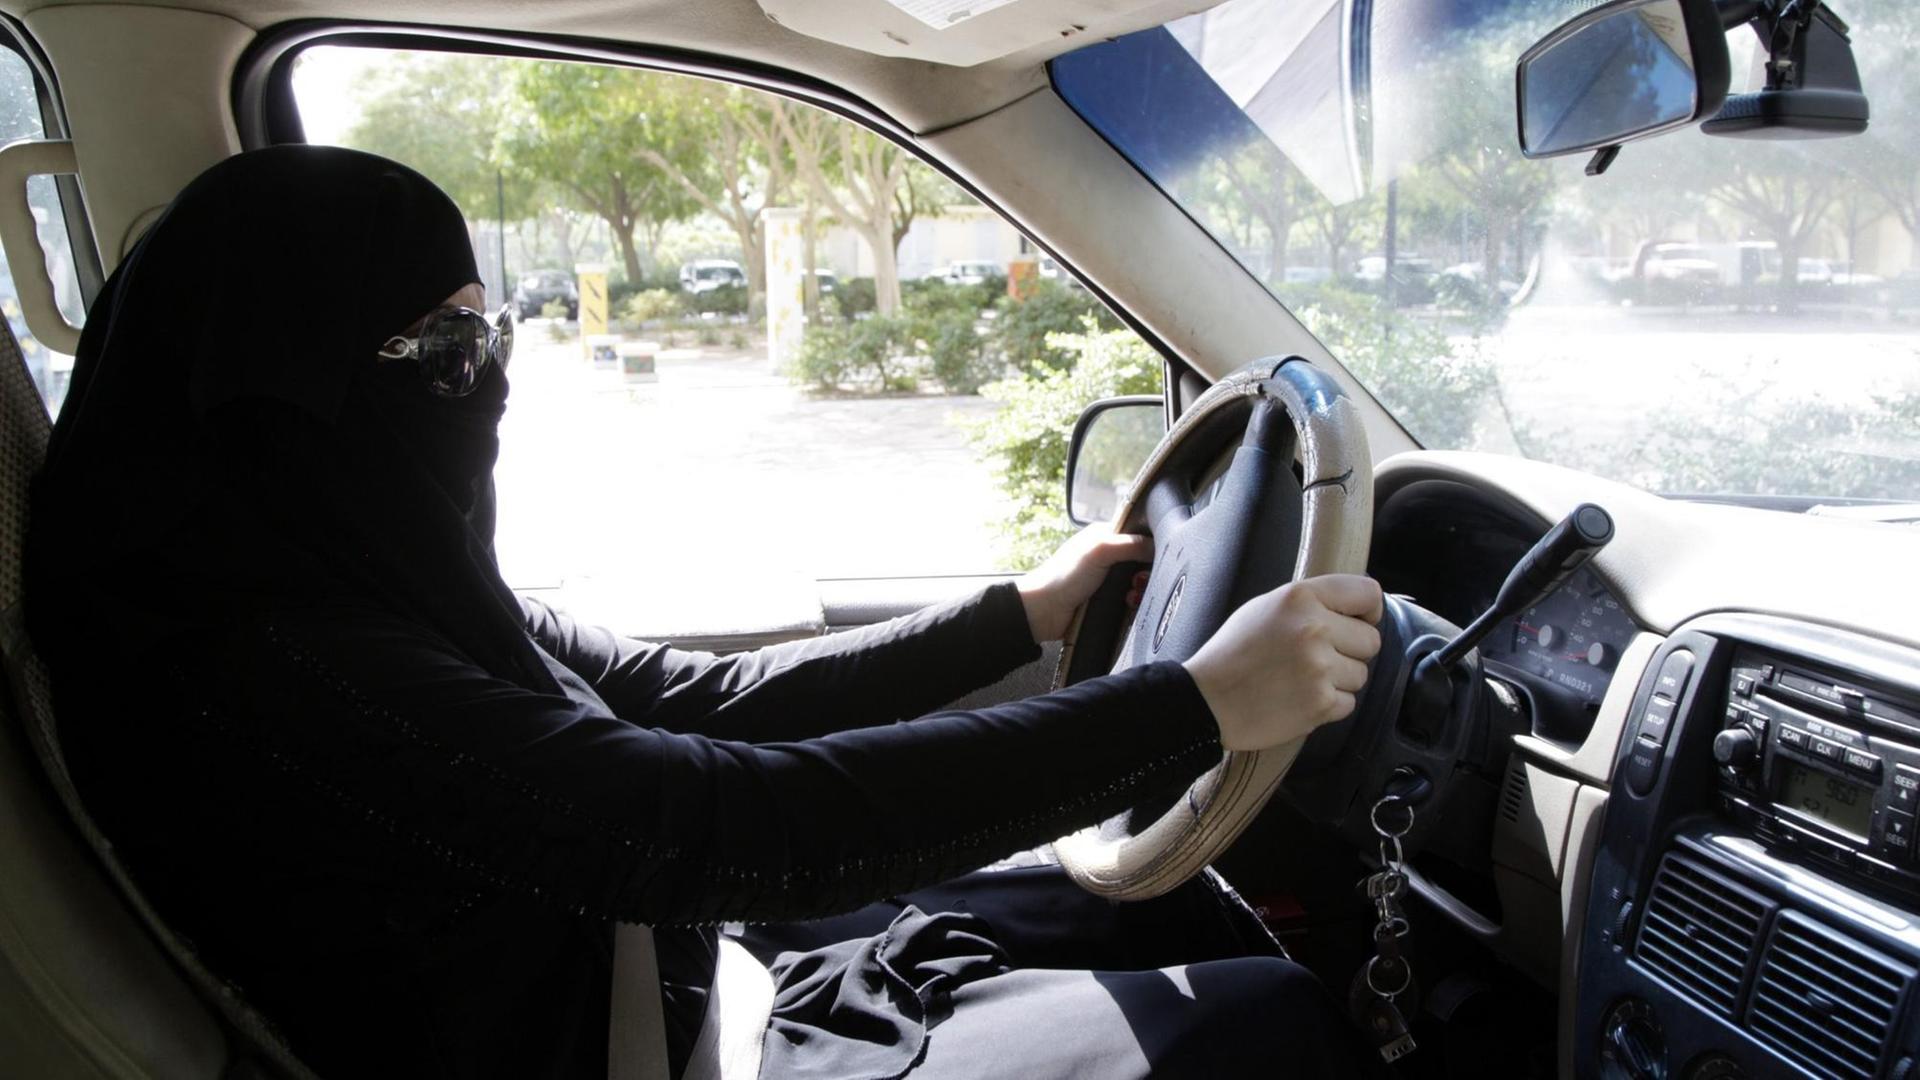 Eine saudische Frau sitzt hinter dem Lenkrad eines Autos in Riad, Saudi-Arabien am 28. Oktober 2013. Am 27. Oktober hatten Behörden 14 Frauen verhaftet, die in Saudi-Arabien Auto gefahren waren